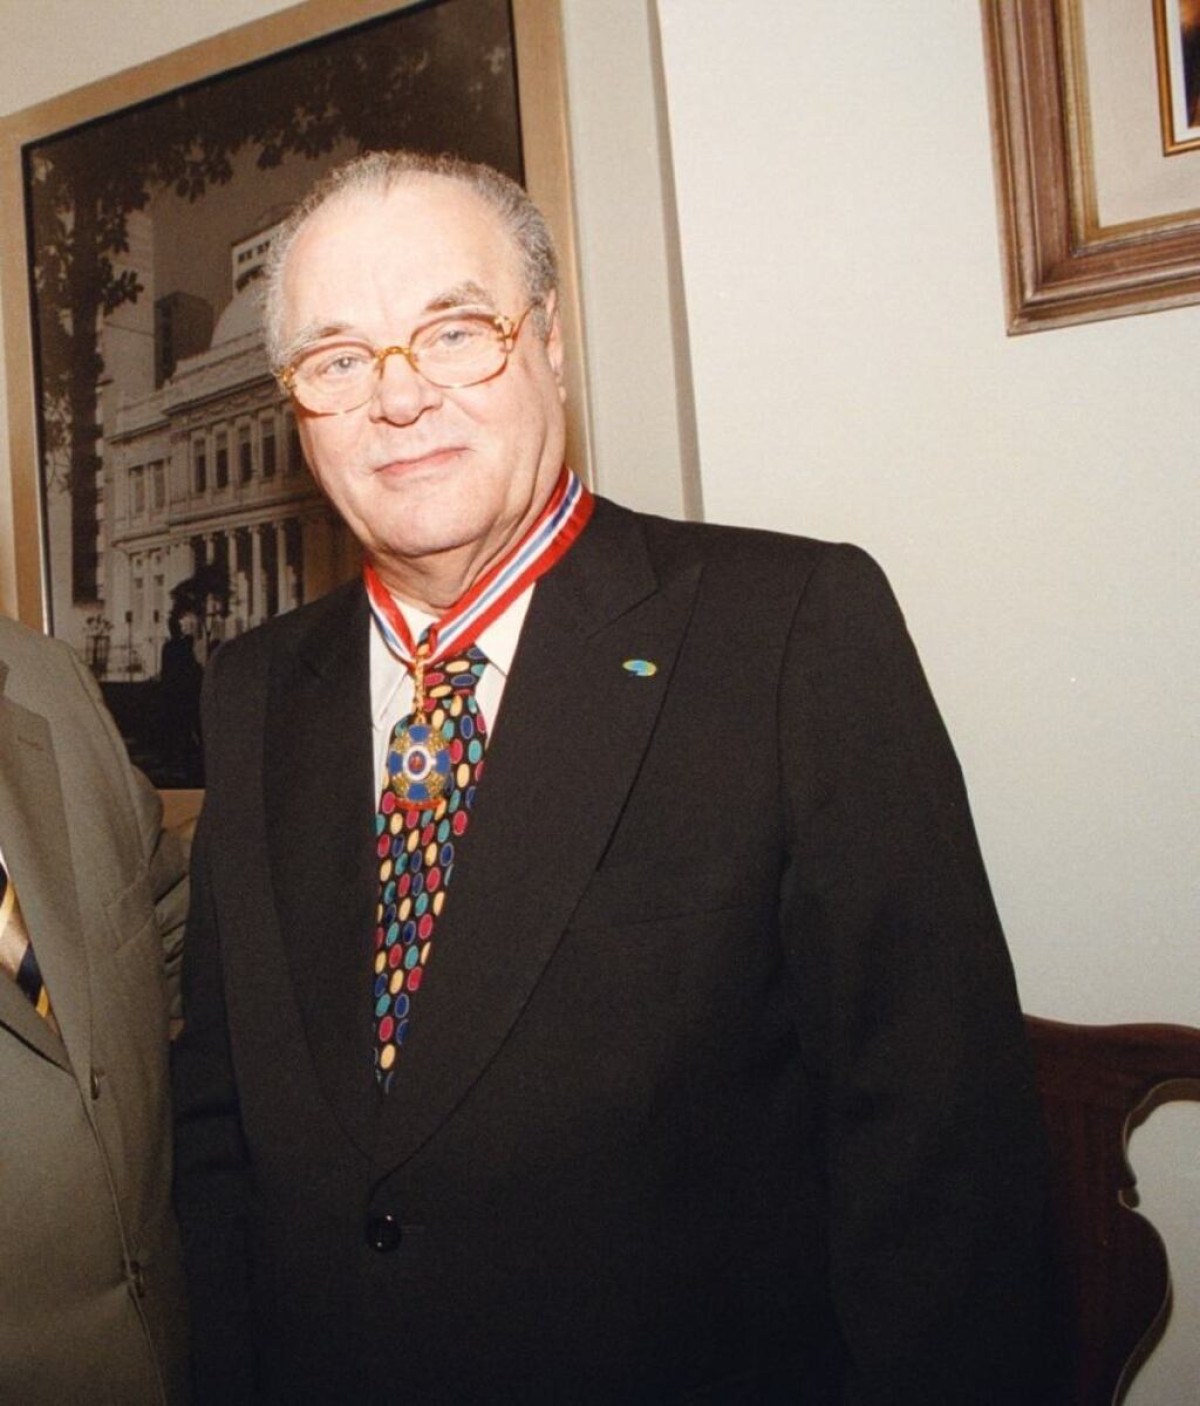 Morre ex-presidente do BDMG e um dos fundadores da Fundação João Pinheiro